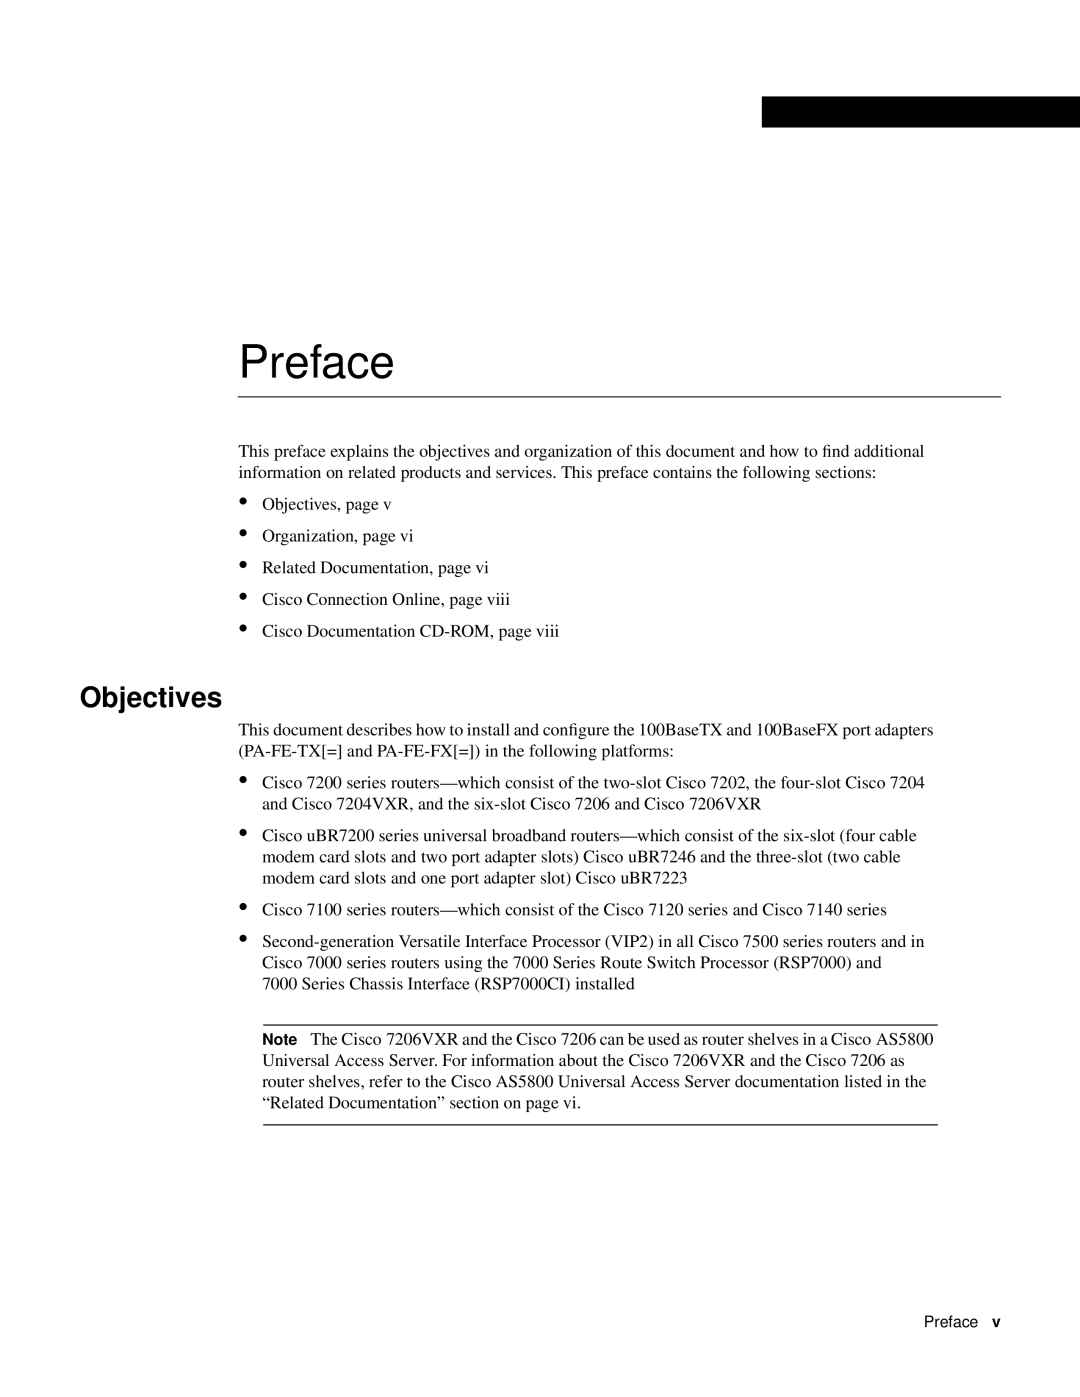 Cisco Systems PA-FE-FX, PA-FE-TX manual Preface, Objectives 